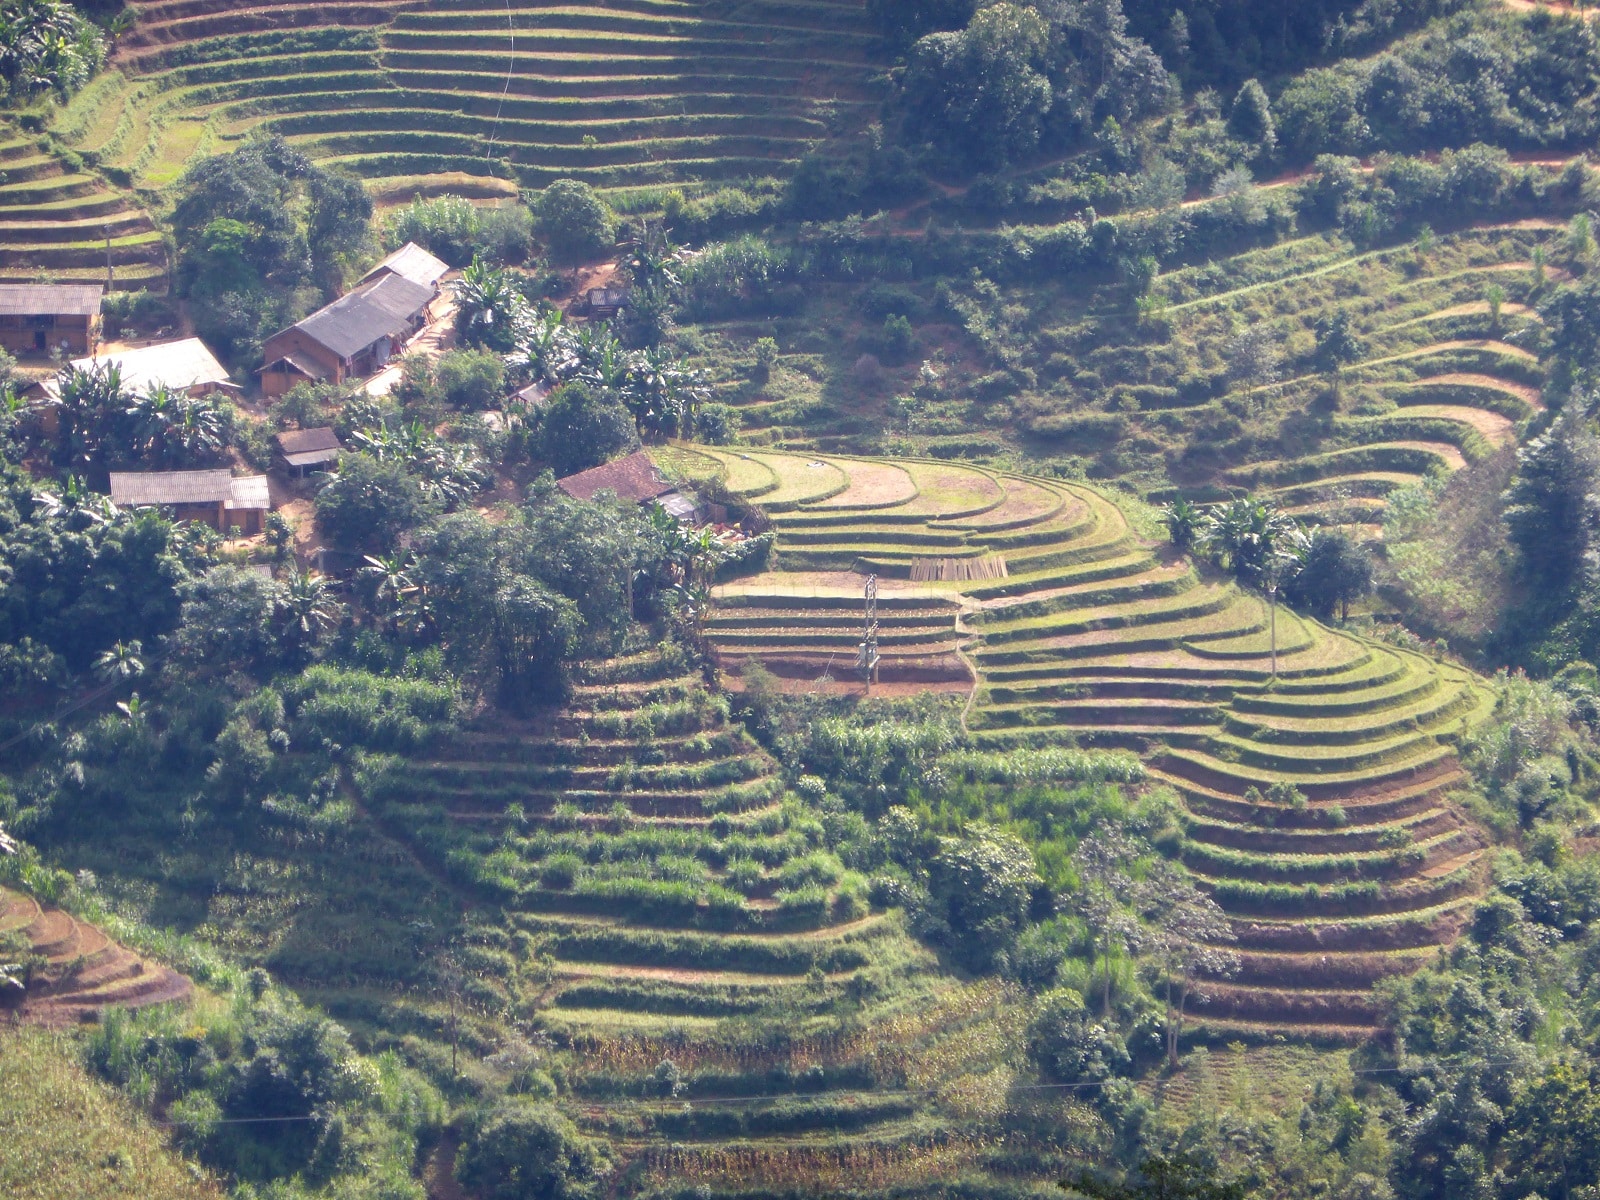 Lire la suite à propos de l’article Road-trip dans les rizières au Nord du Vietnam